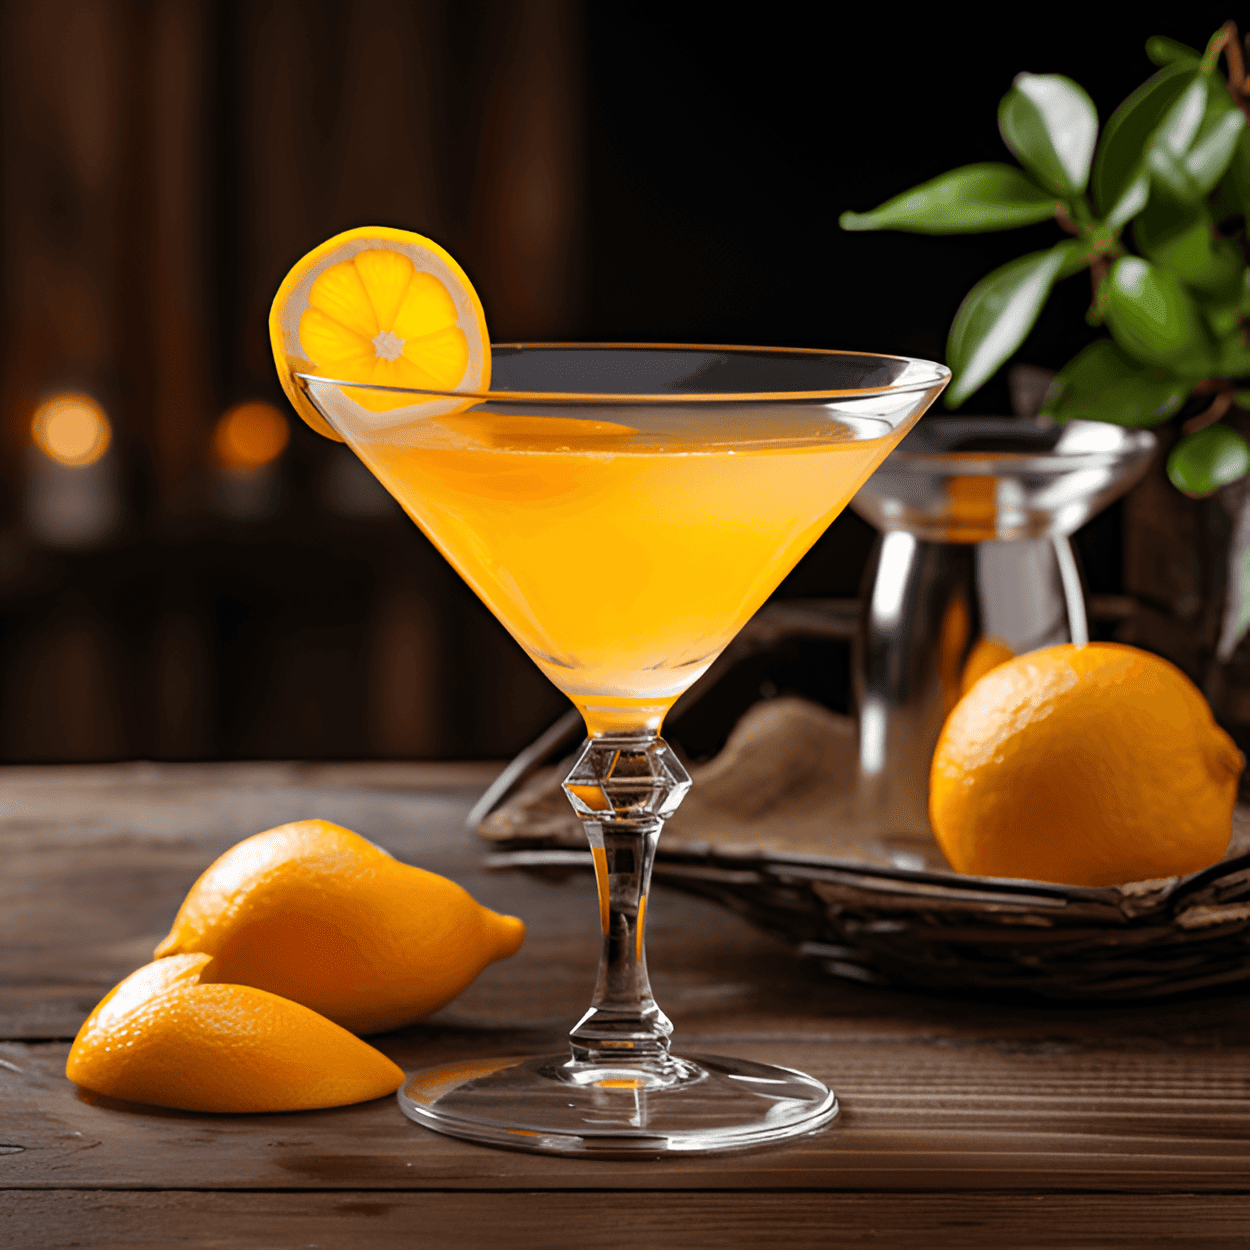 Navel Receta - El Cóctel Navel ofrece un delicioso equilibrio de sabores dulces y agrios. La dulzura del licor de naranja se equilibra perfectamente con la acidez del jugo de limón. Es una bebida refrescante y cítrica con un suave y aterciopelado final.